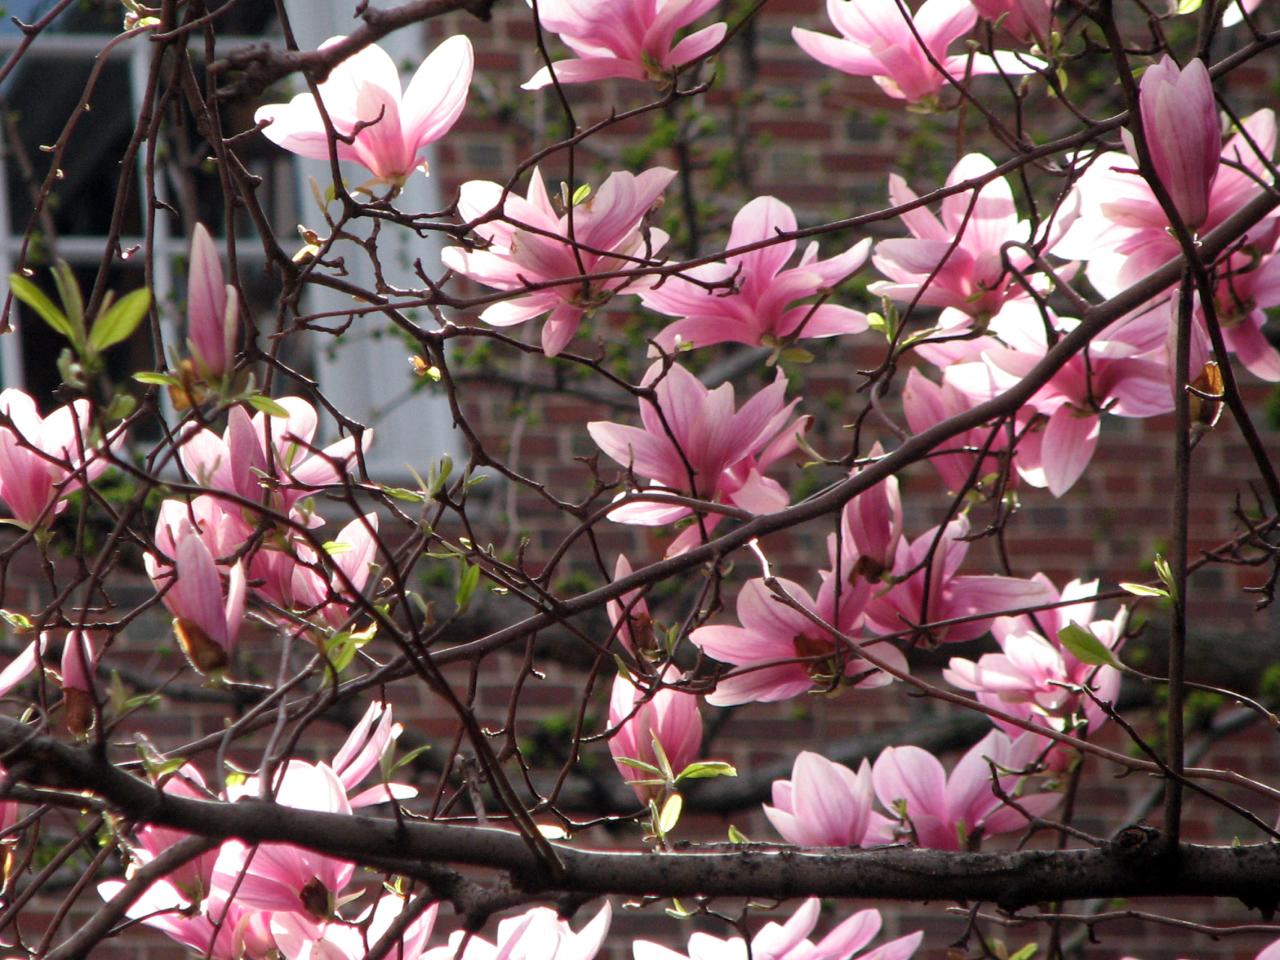 04.16.09 Magnolias